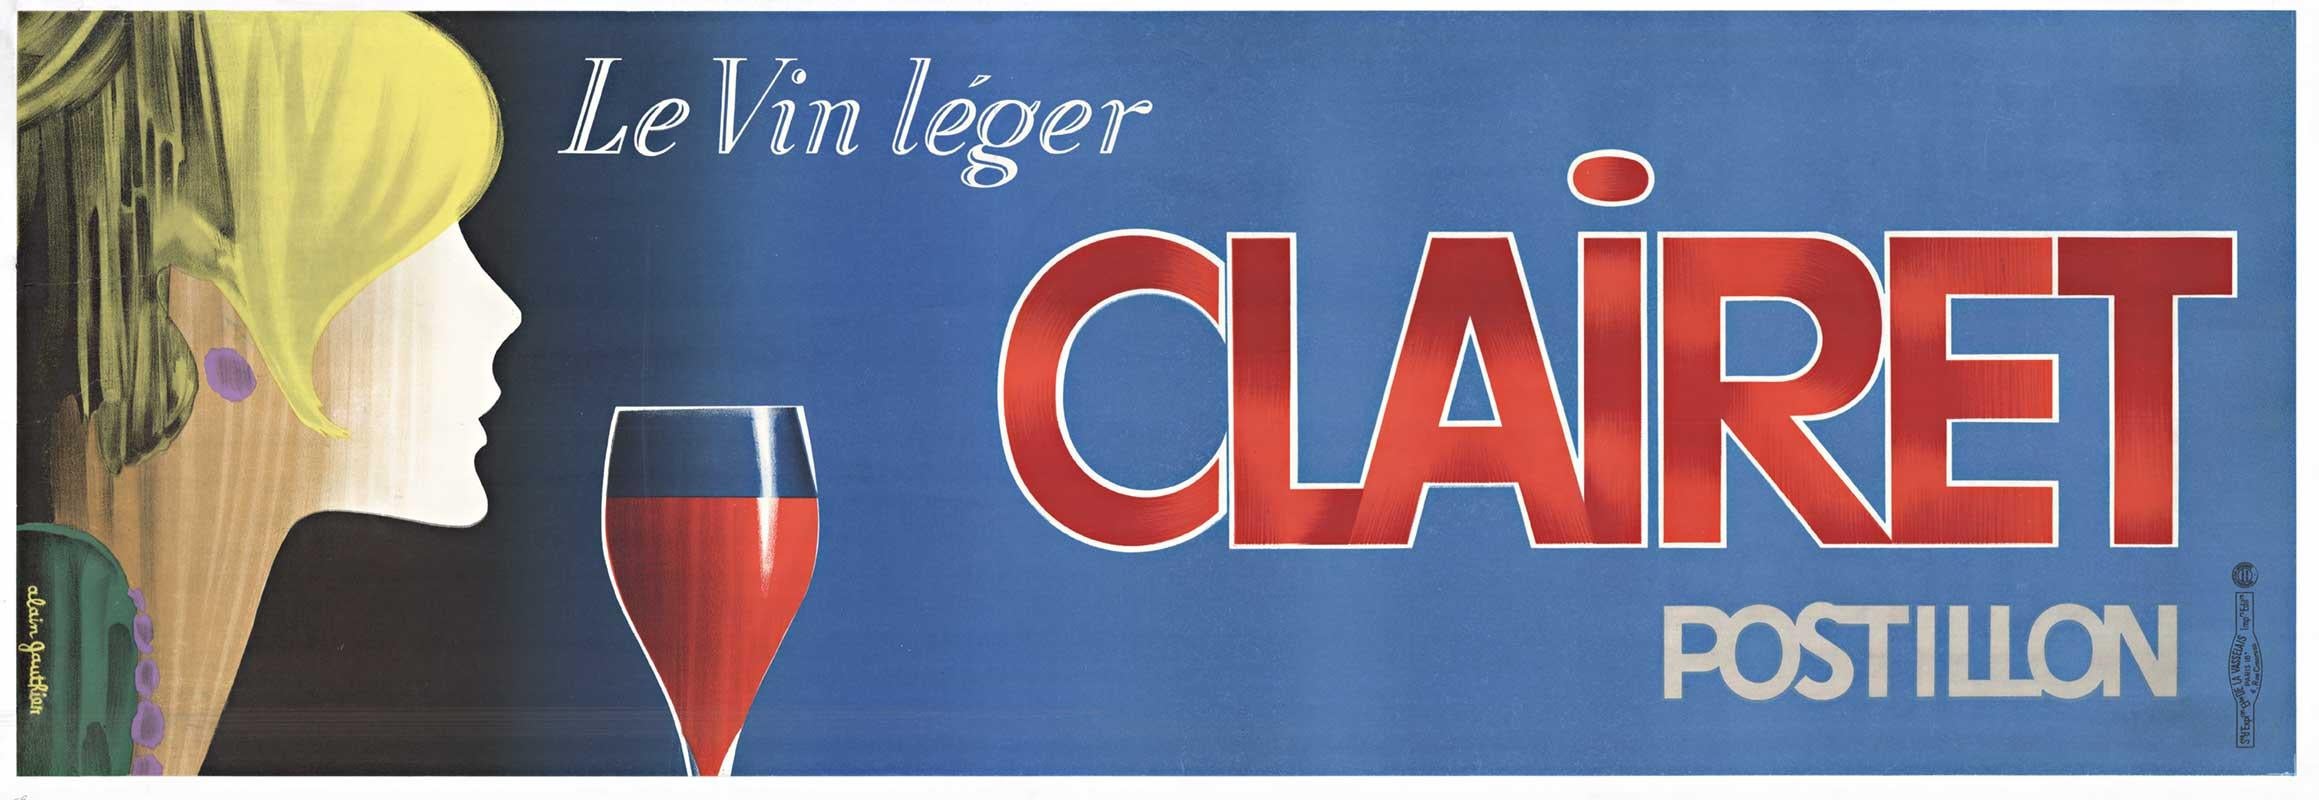 Französisches Vintage-Vintage-Wein-Postillon von Clairet Postillon Le Vin Leger, horizontal